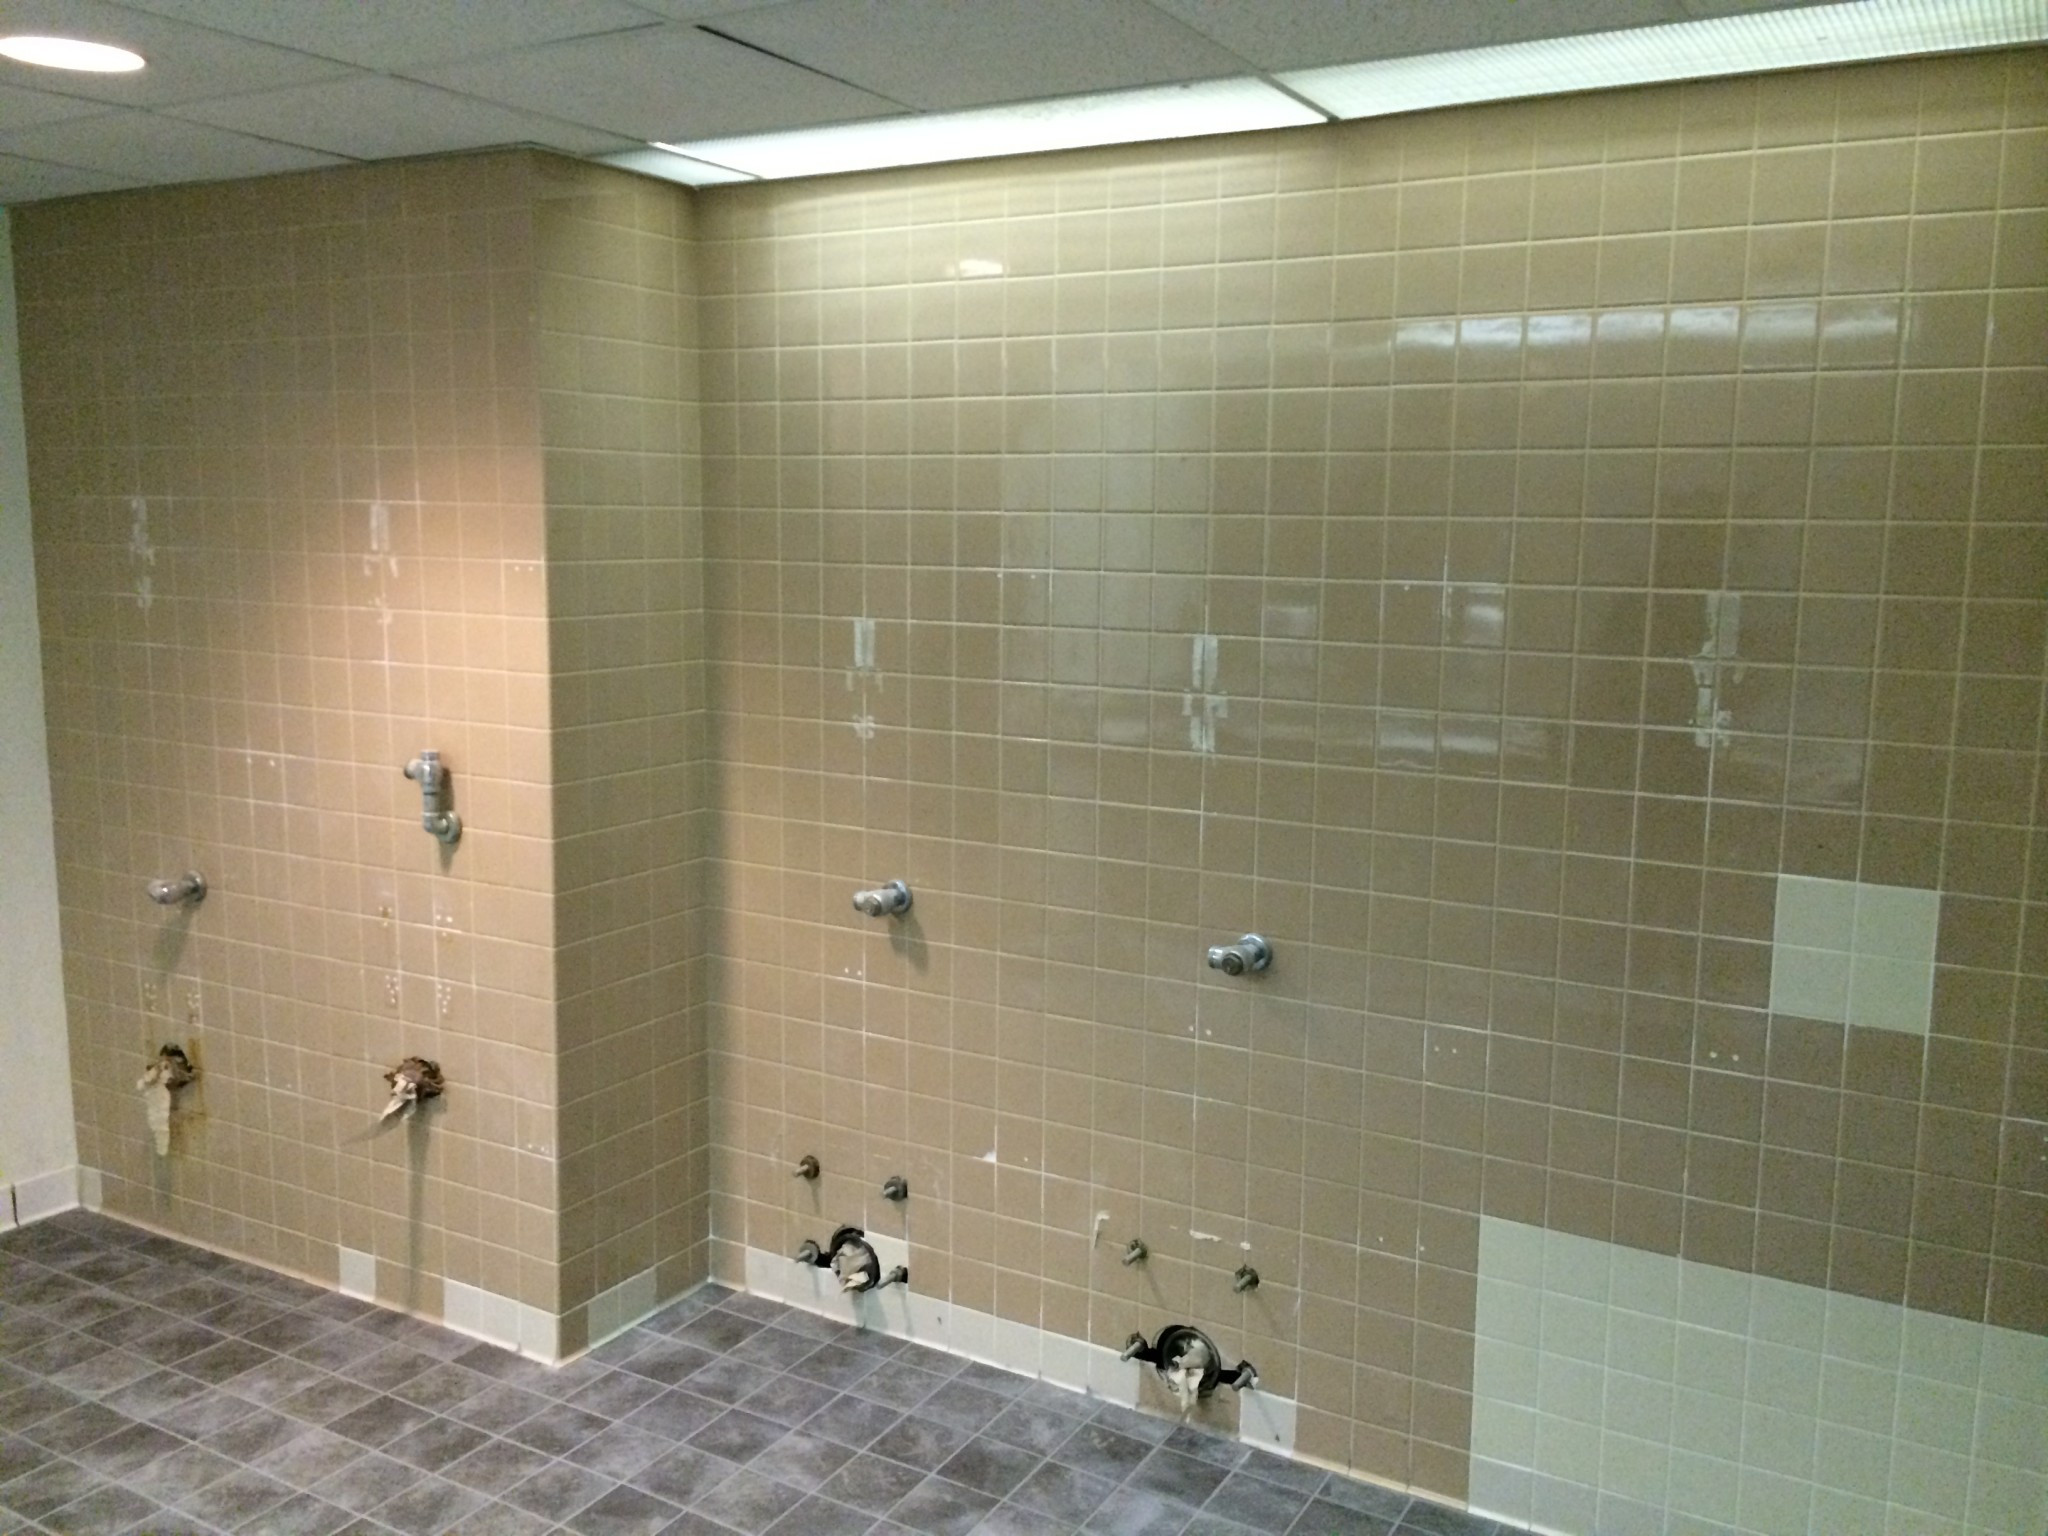 Refinishing Bathroom Tiles
 Wall and Floor Tile Reglazing and Refinishing